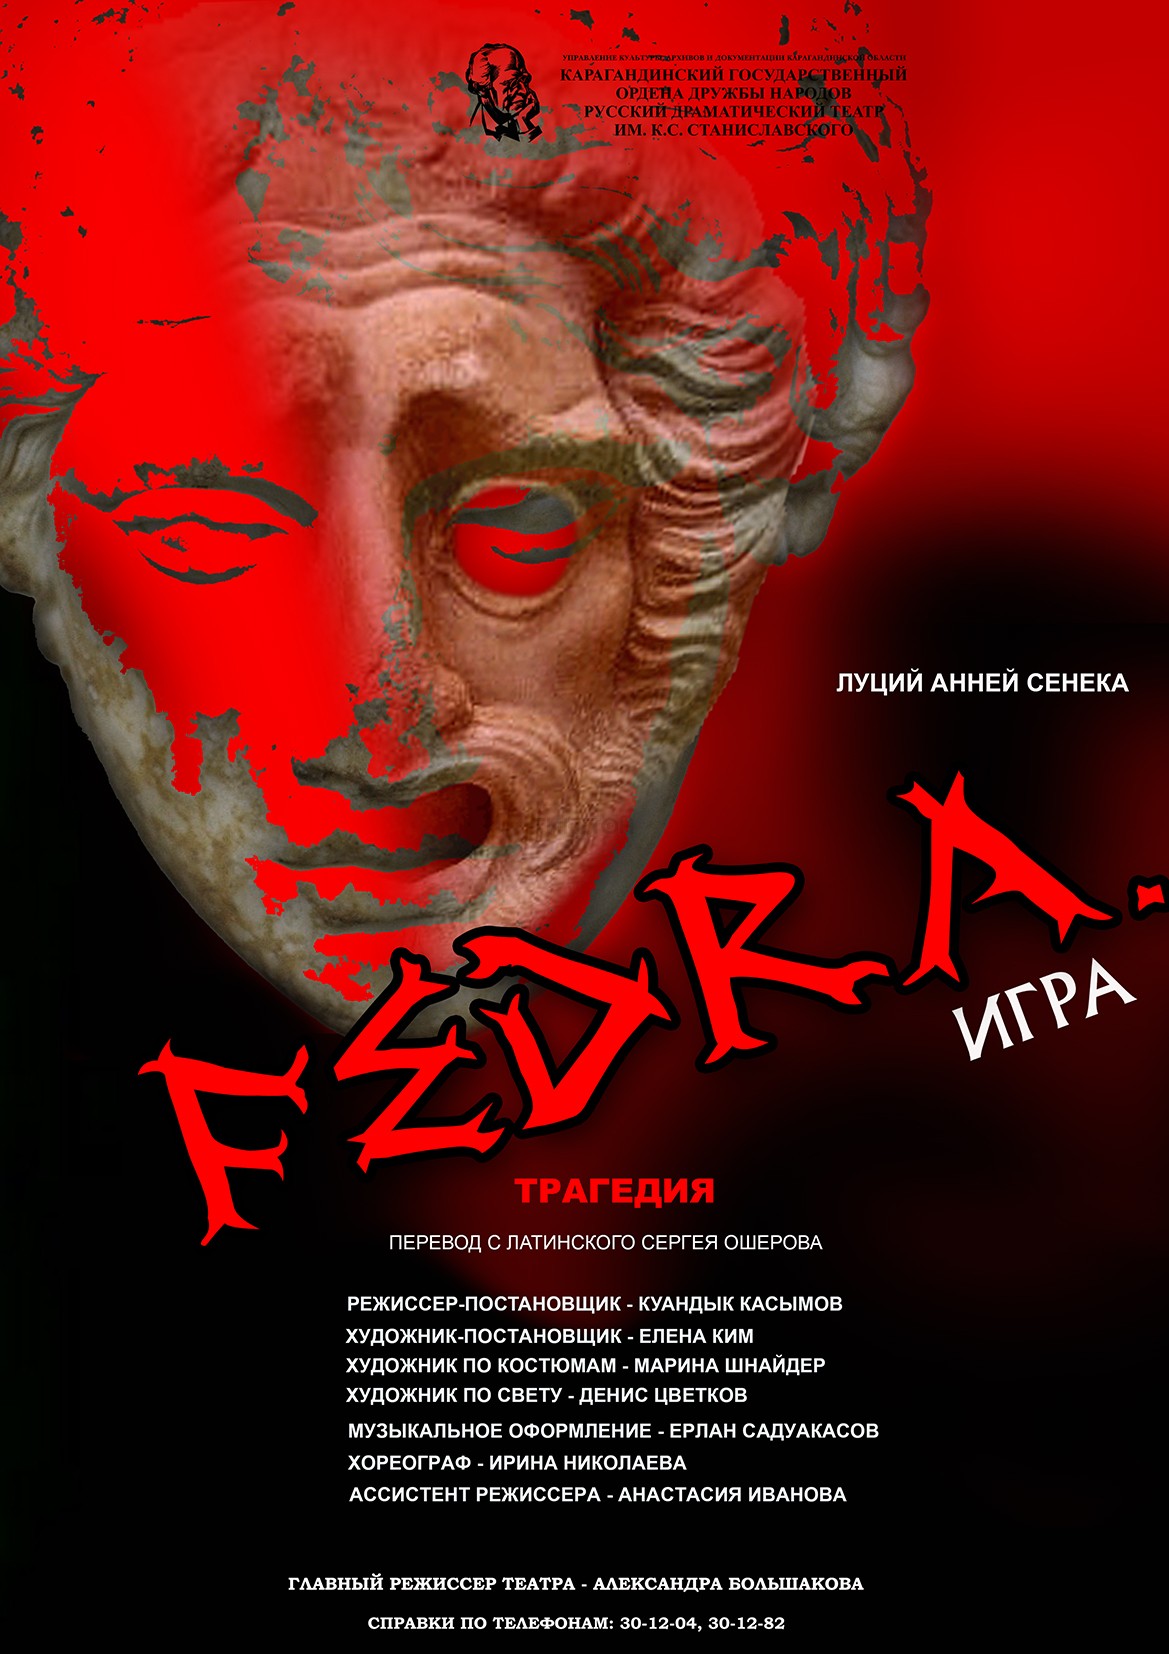 Федра. Игра, Fedra, Театр Станиславского